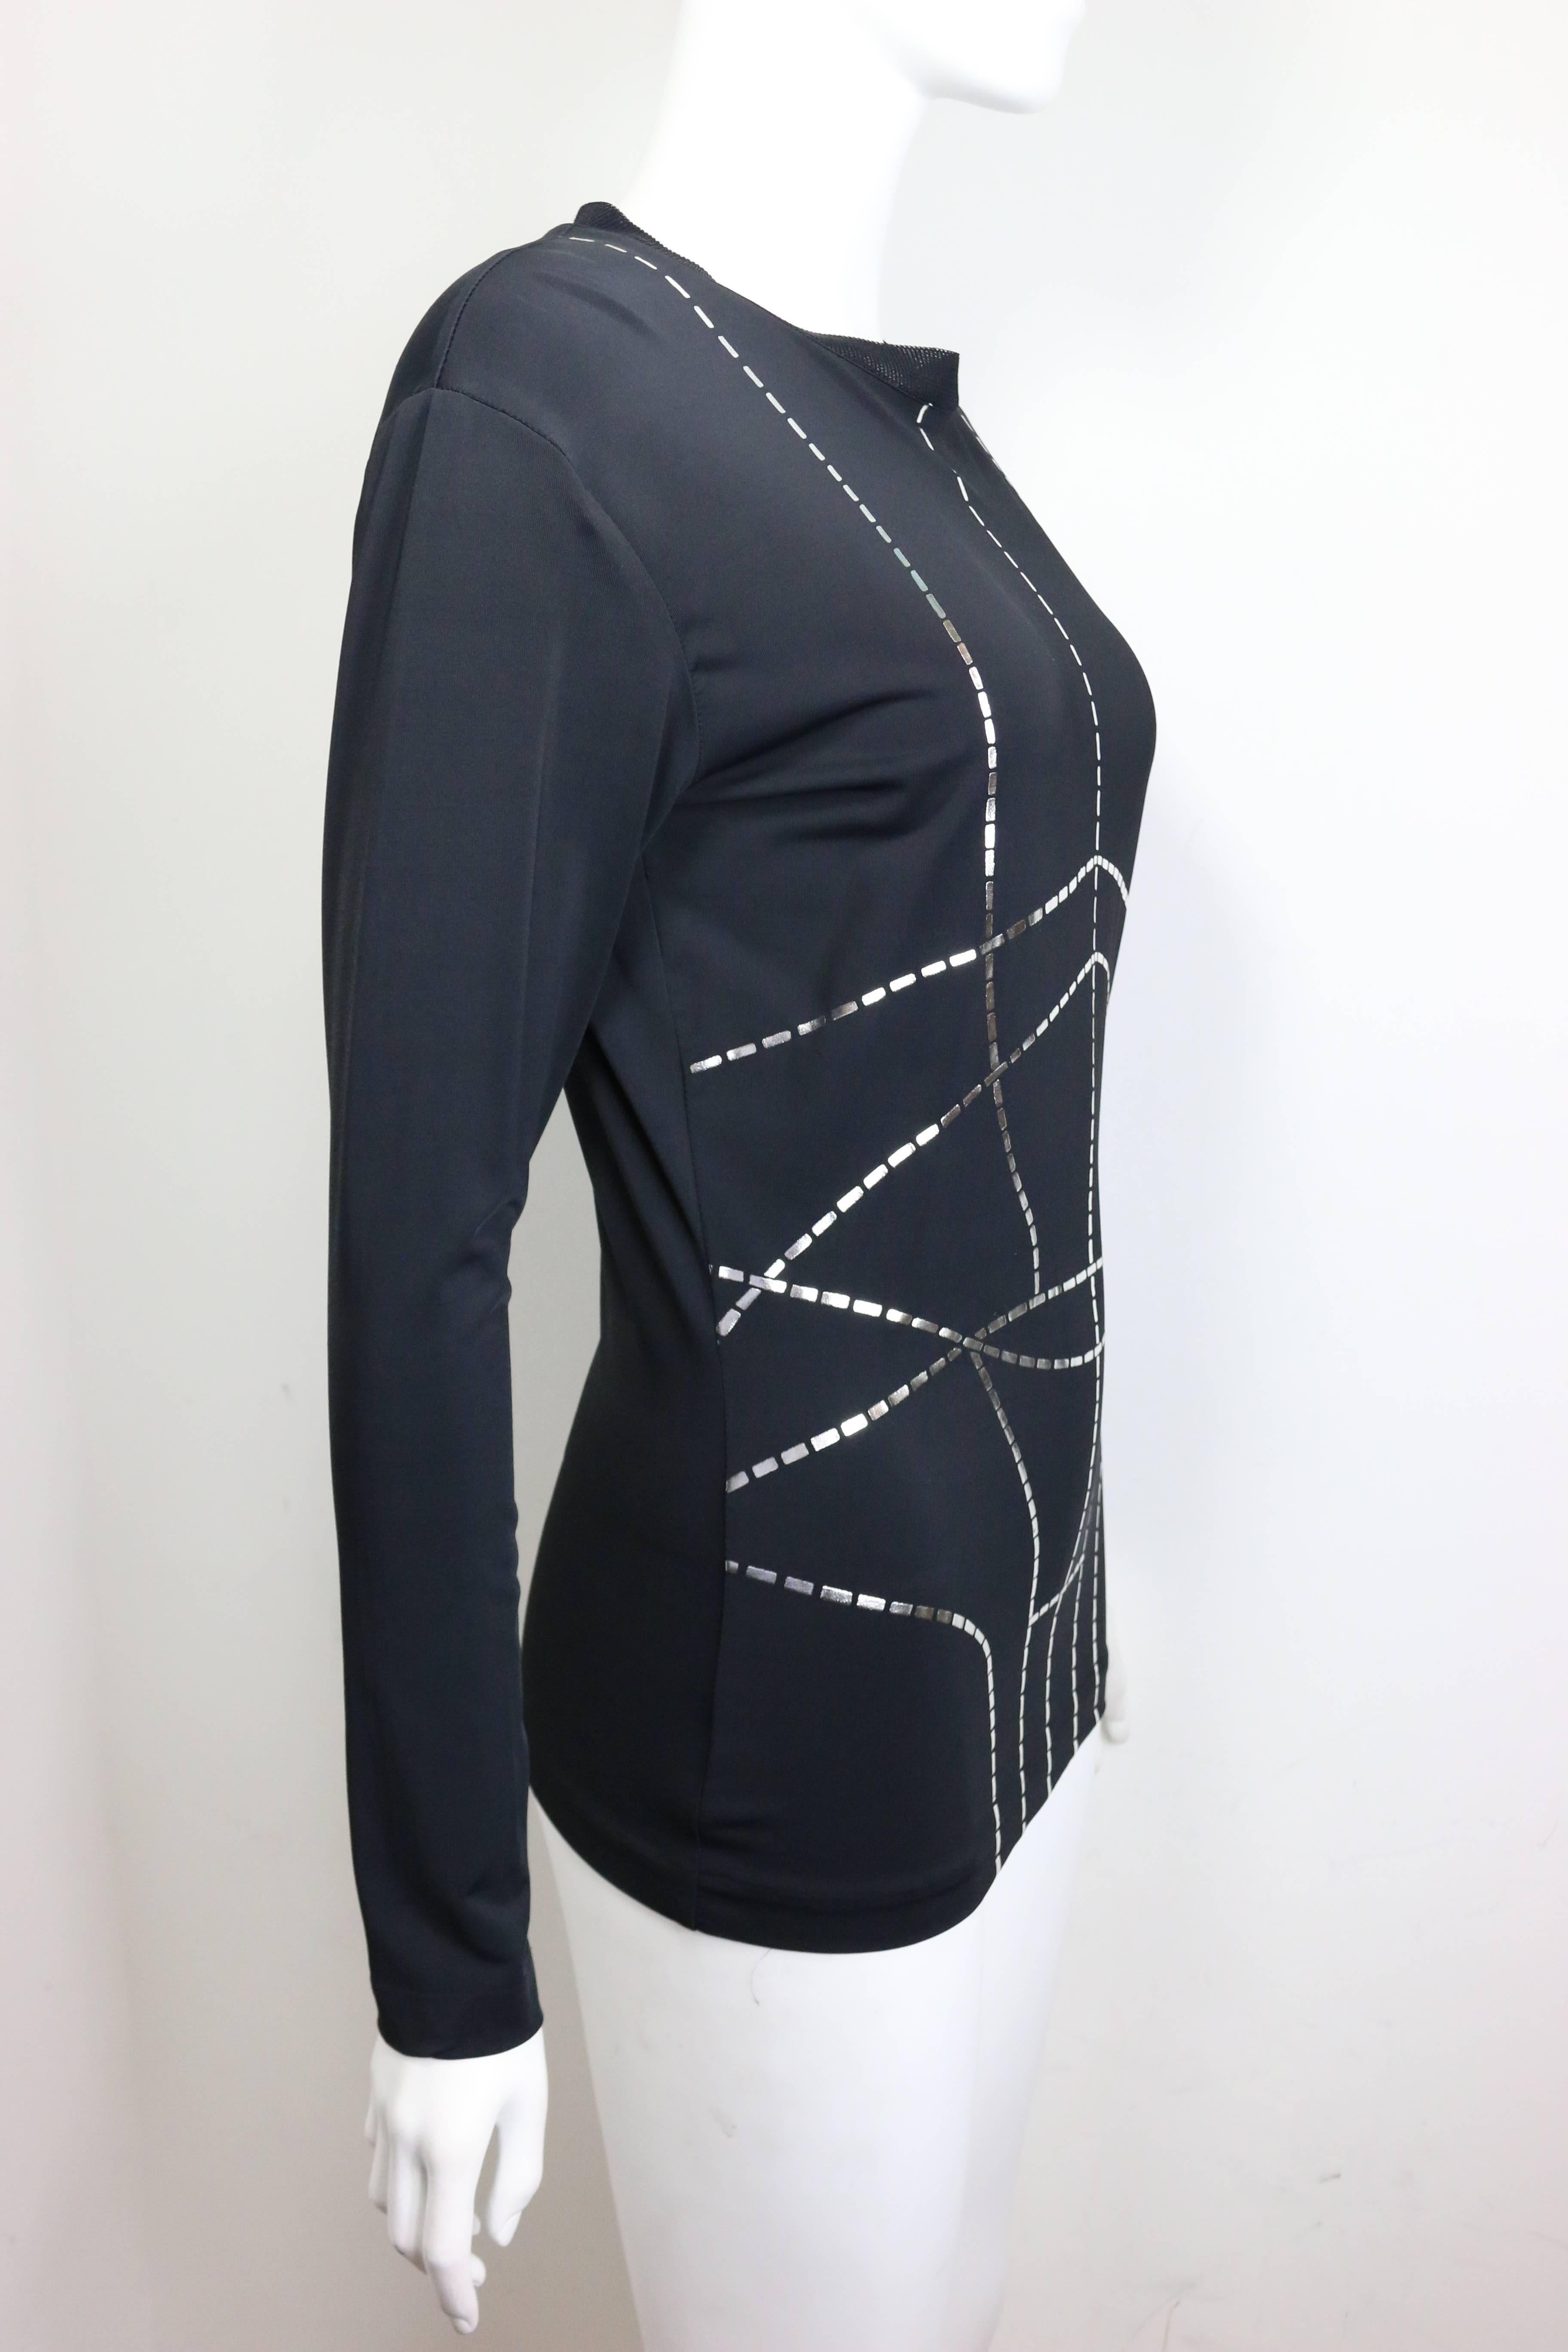 Noir Haut Martine Sitbon tricot noir avec doublures métalliques argentées à motif pull en vente